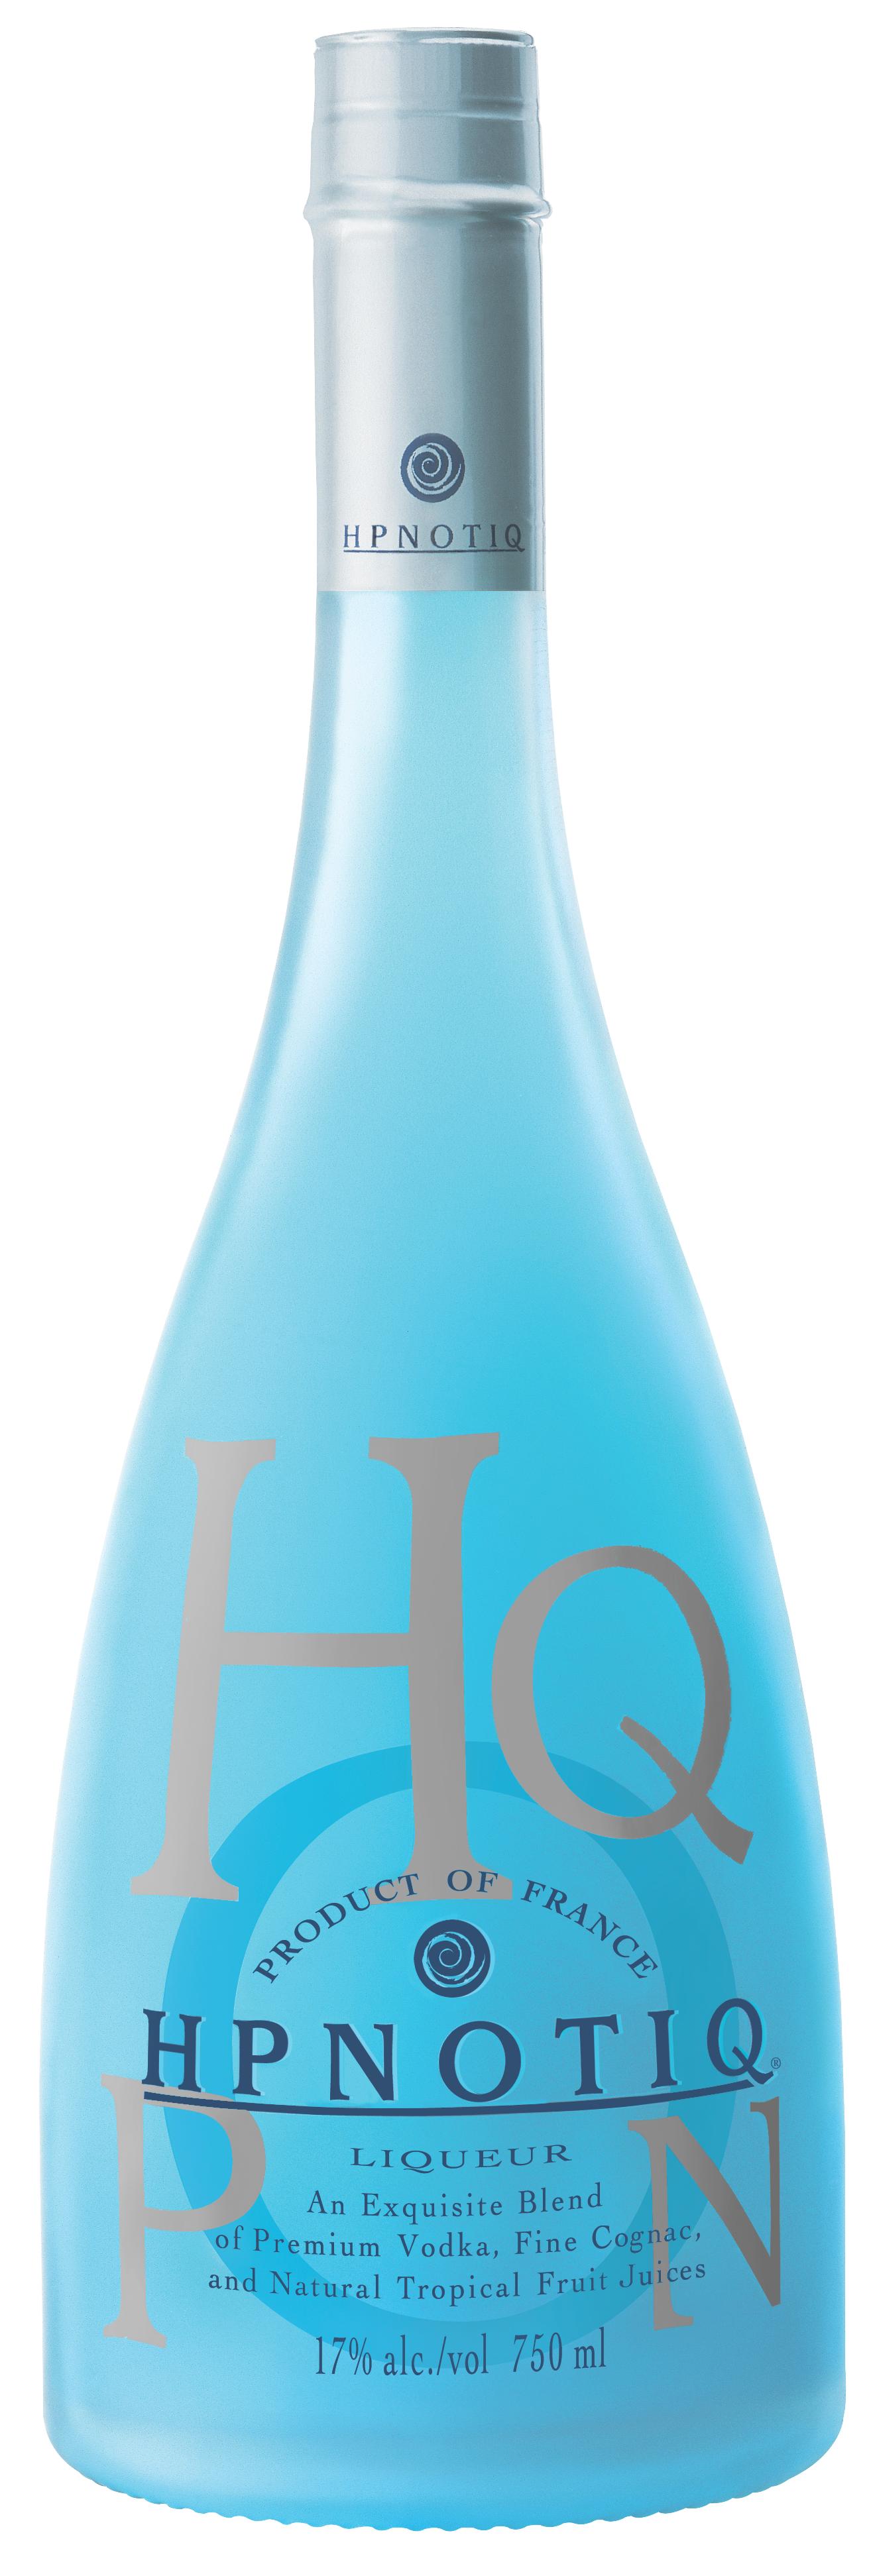 Hpnotiq Logo - Heaven Hill Brands